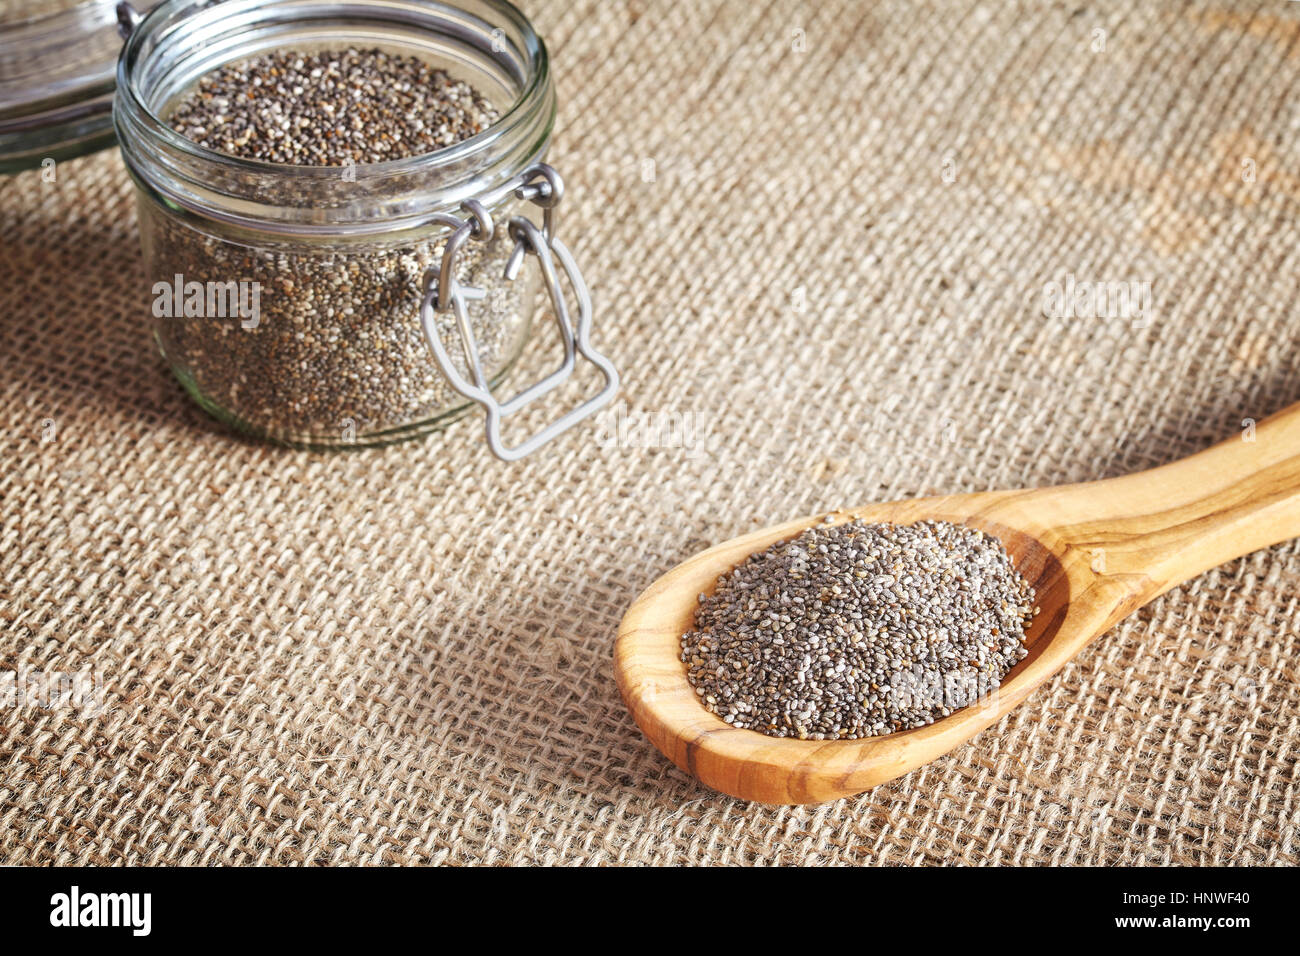 Les graines de Chia dans une cuillère en bois et un pot, de l'alimentation riche en acides gras omega-3. Banque D'Images